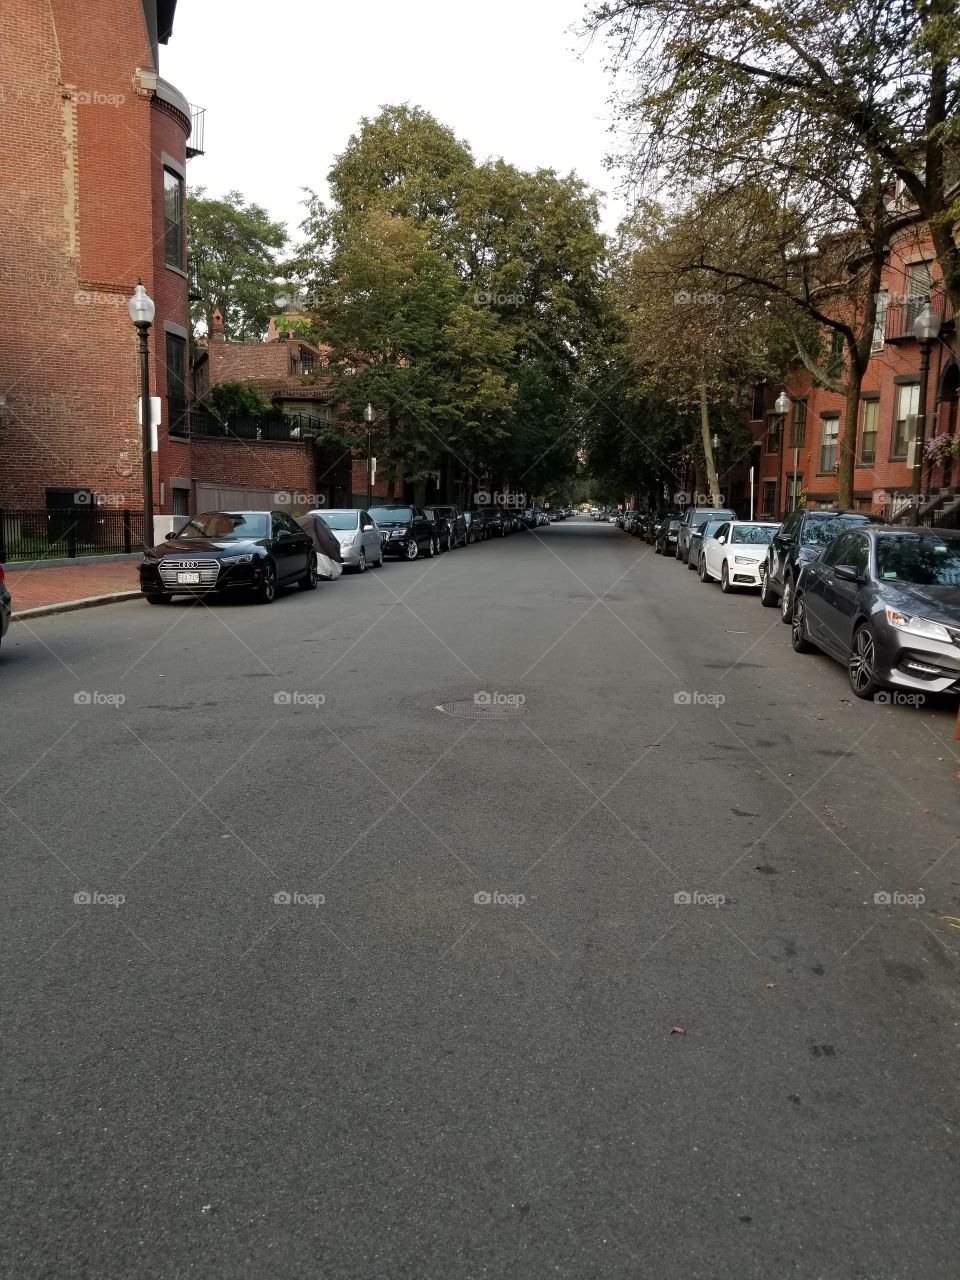 Boston South End Street